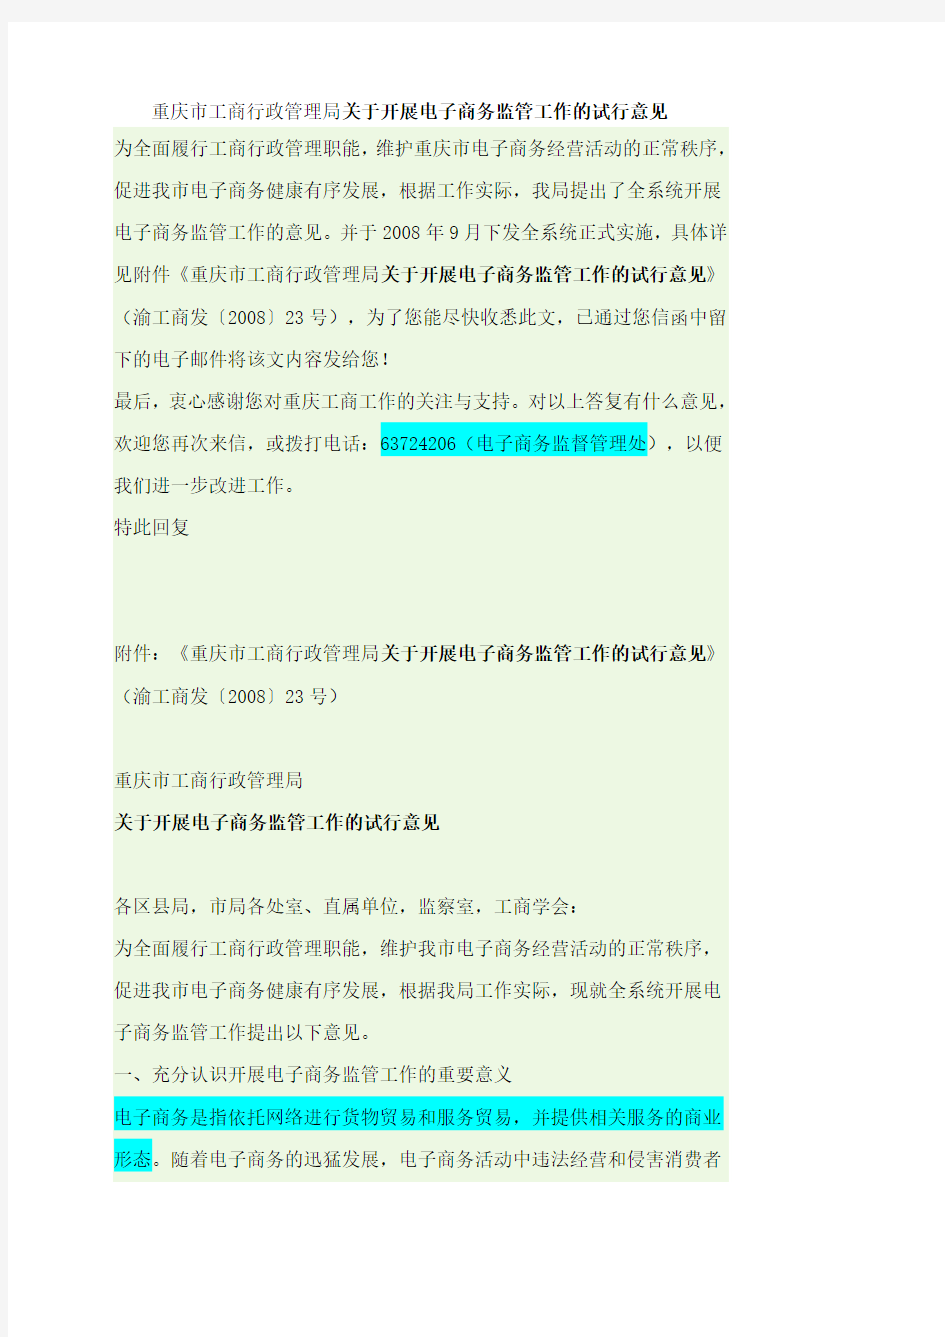 《重庆市工商行政管理局关于开展电子商务监管工作的试行意见》